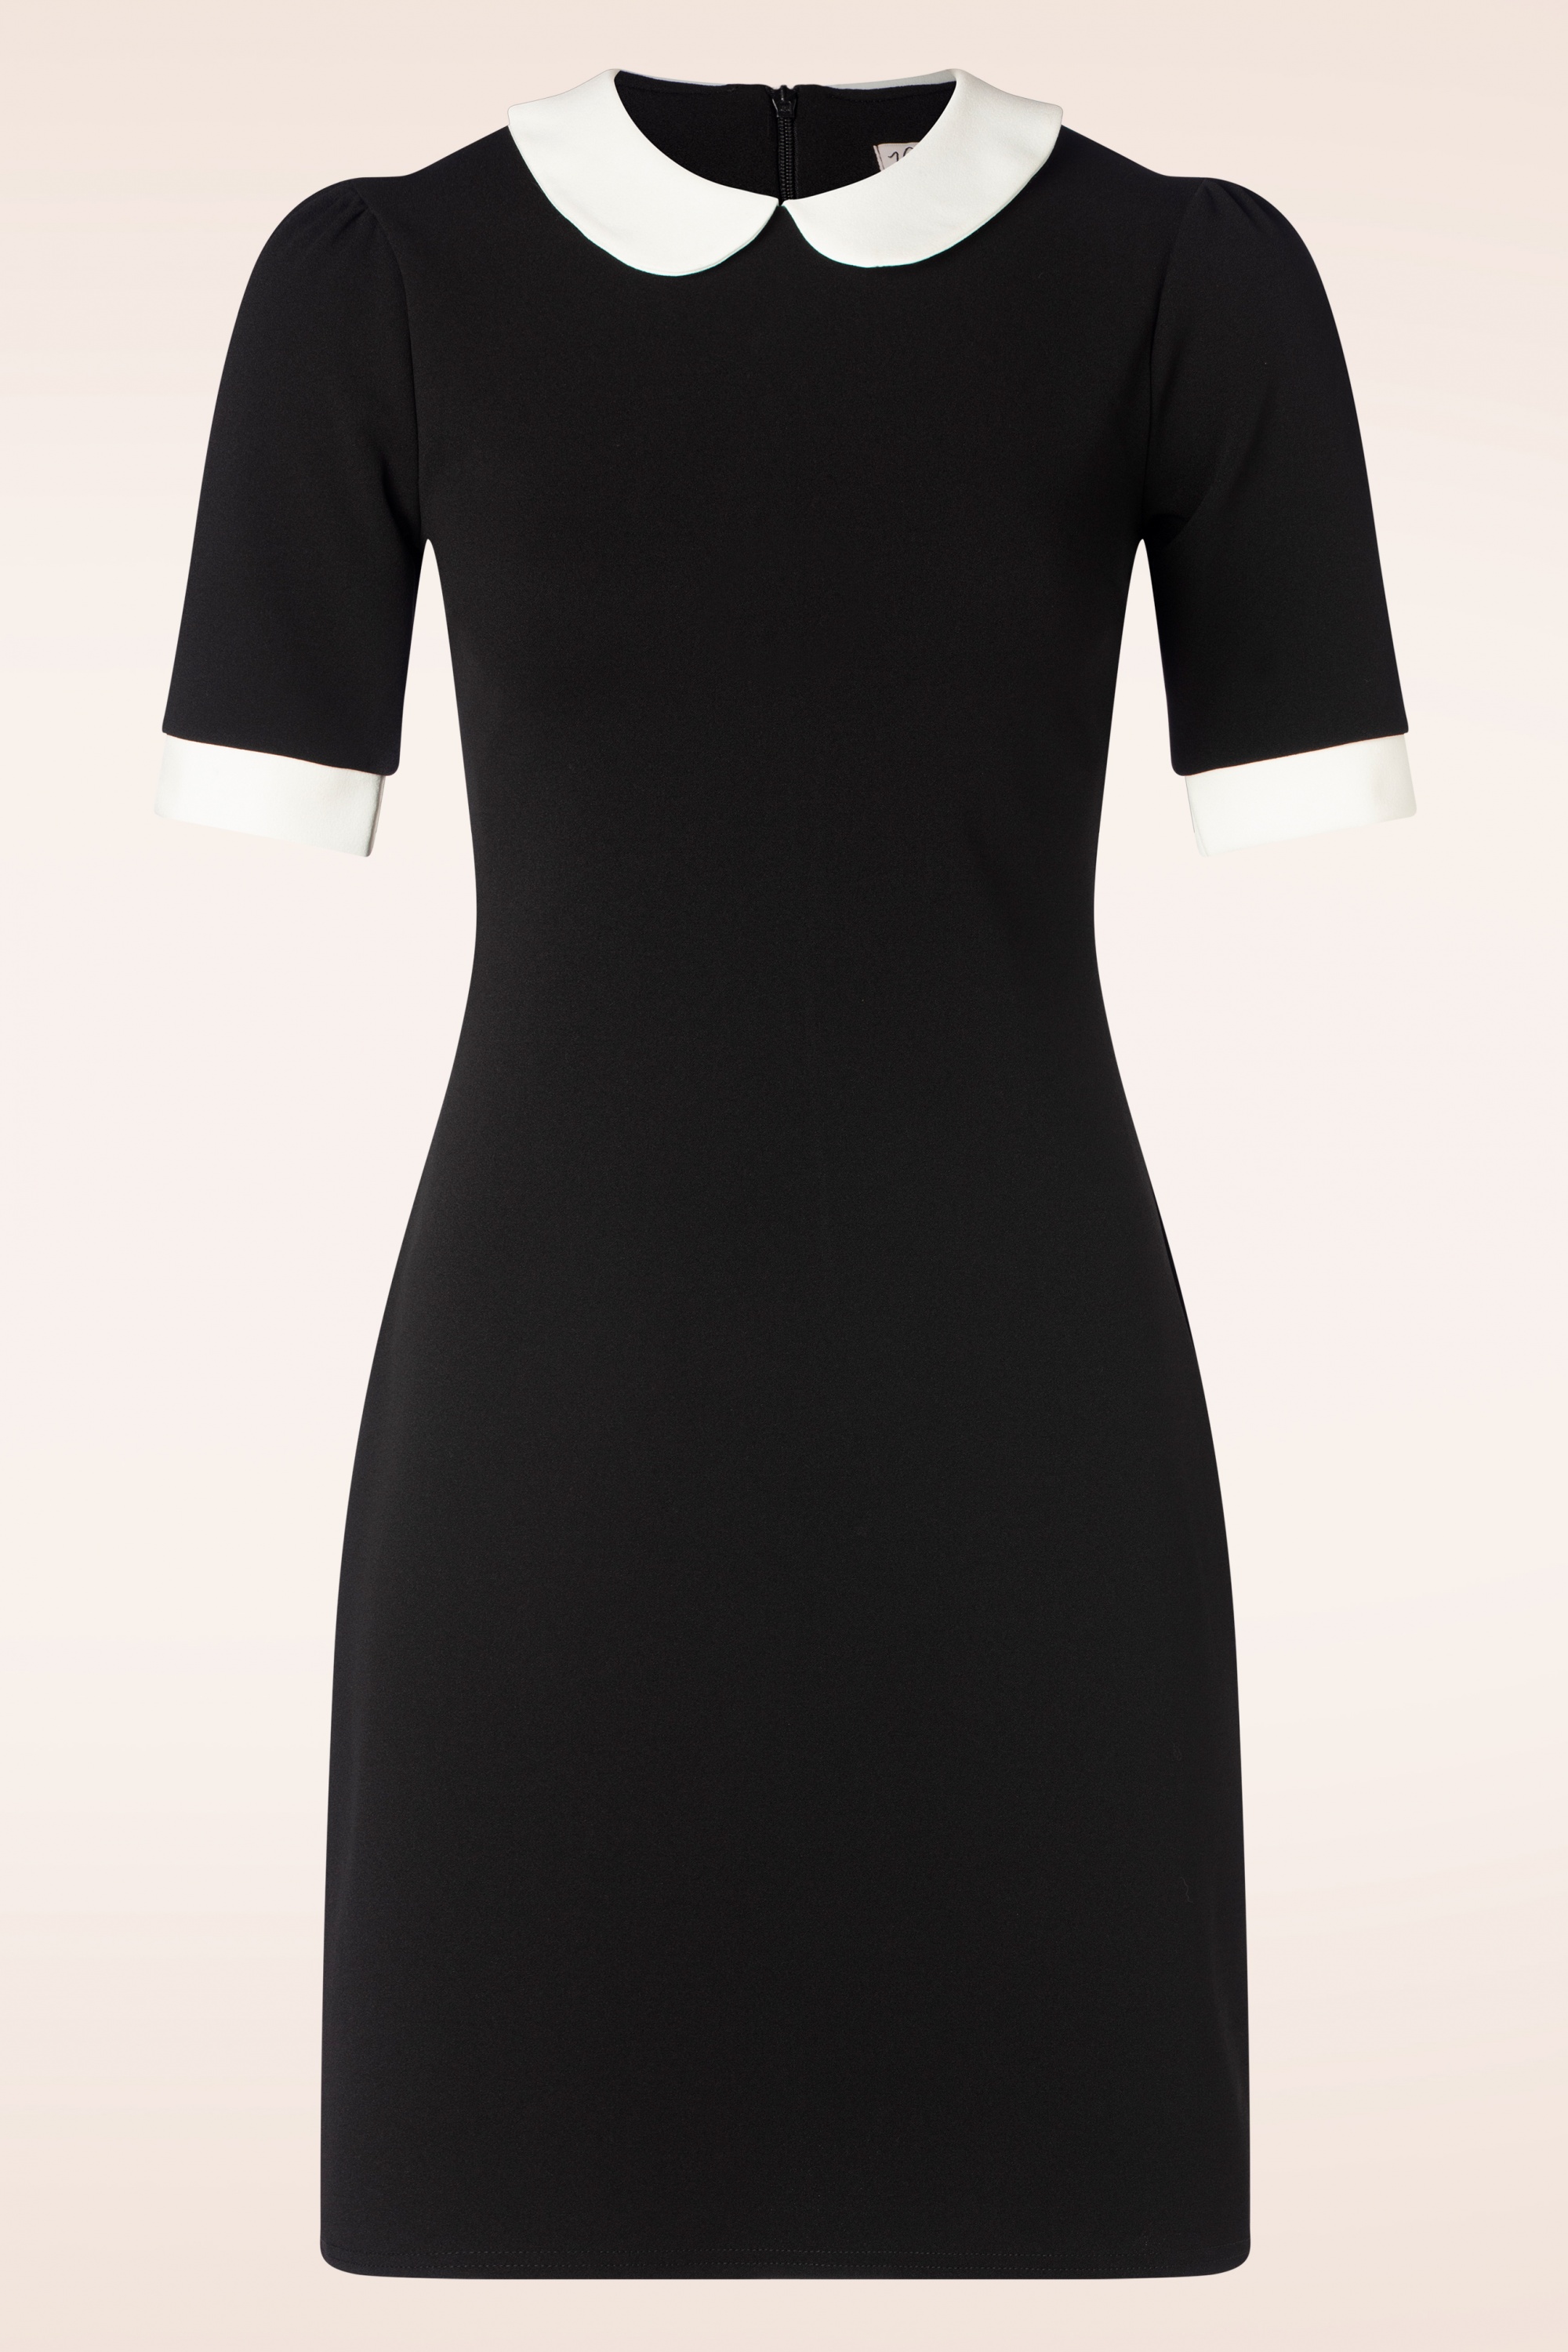 Vintage Chic for Topvintage - Ebony jurk in zwart en wit